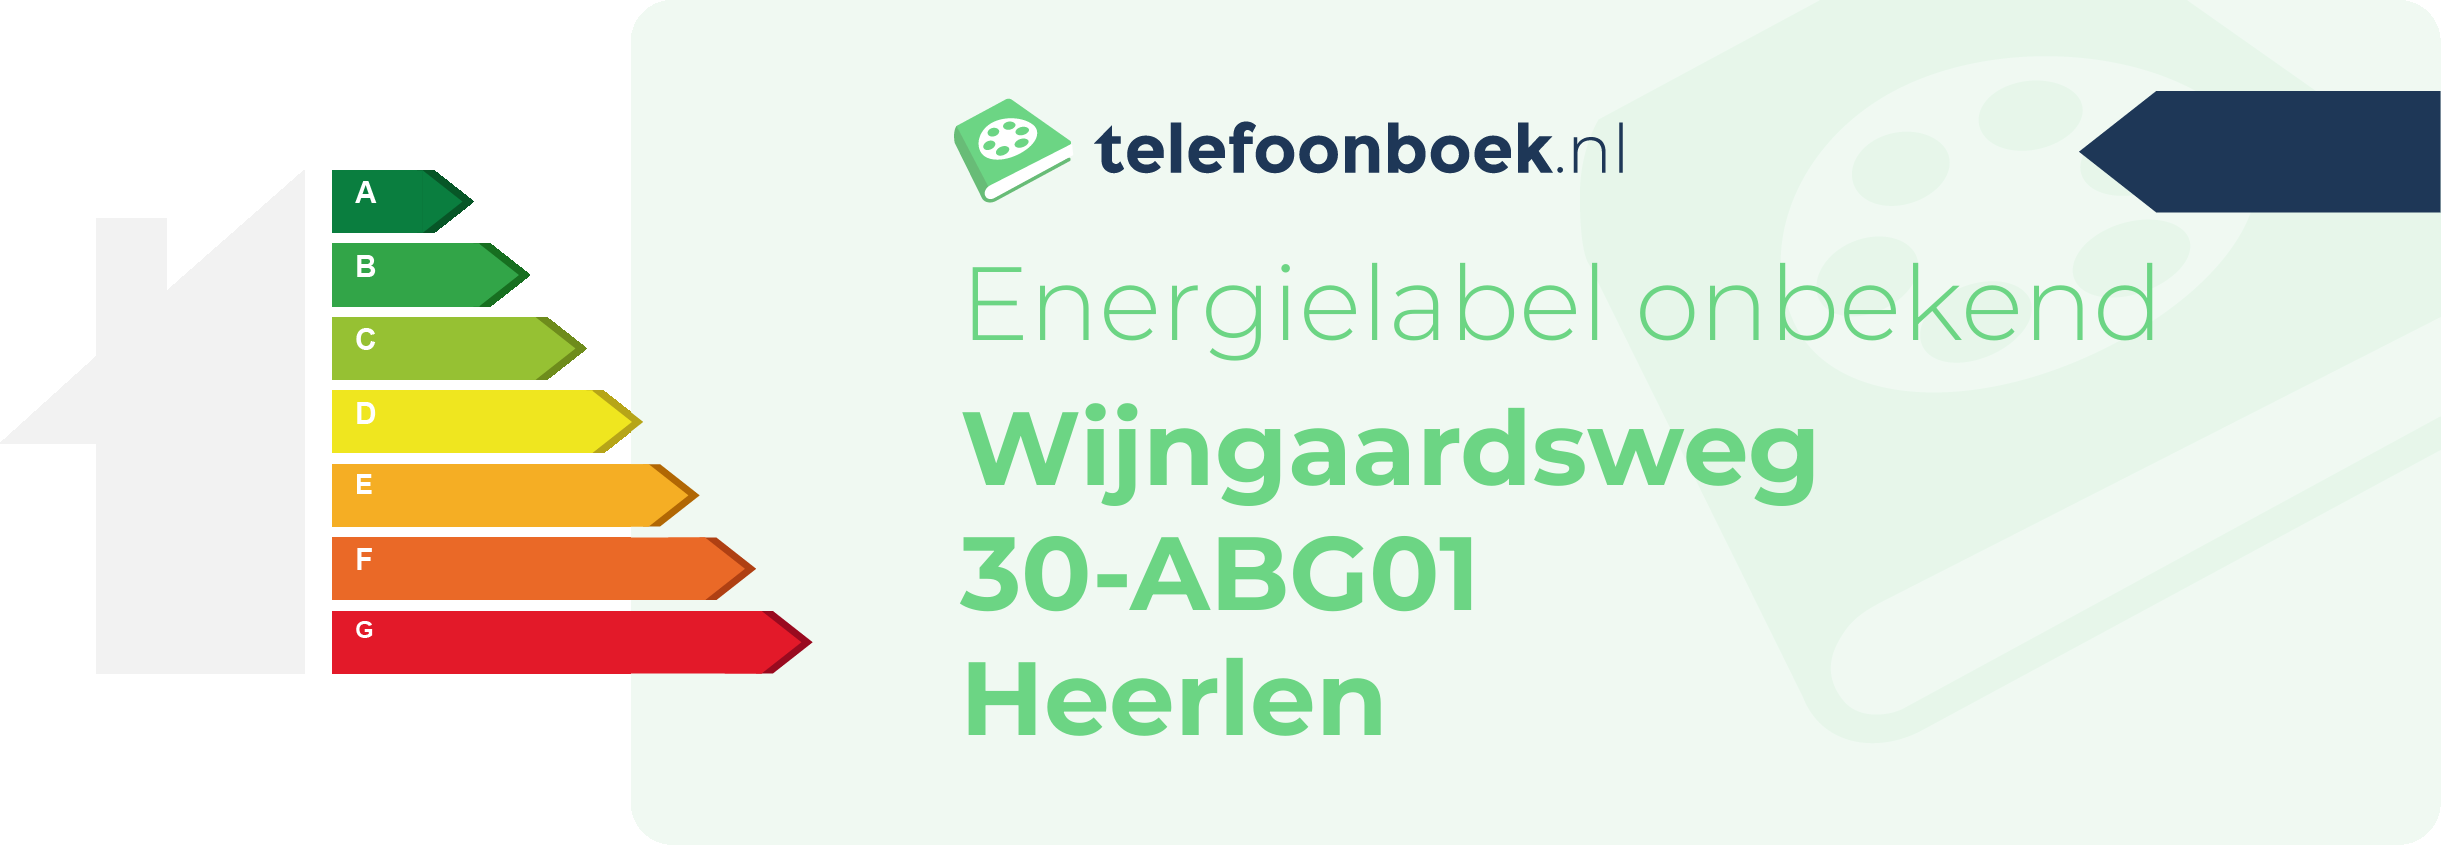 Energielabel Wijngaardsweg 30-ABG01 Heerlen